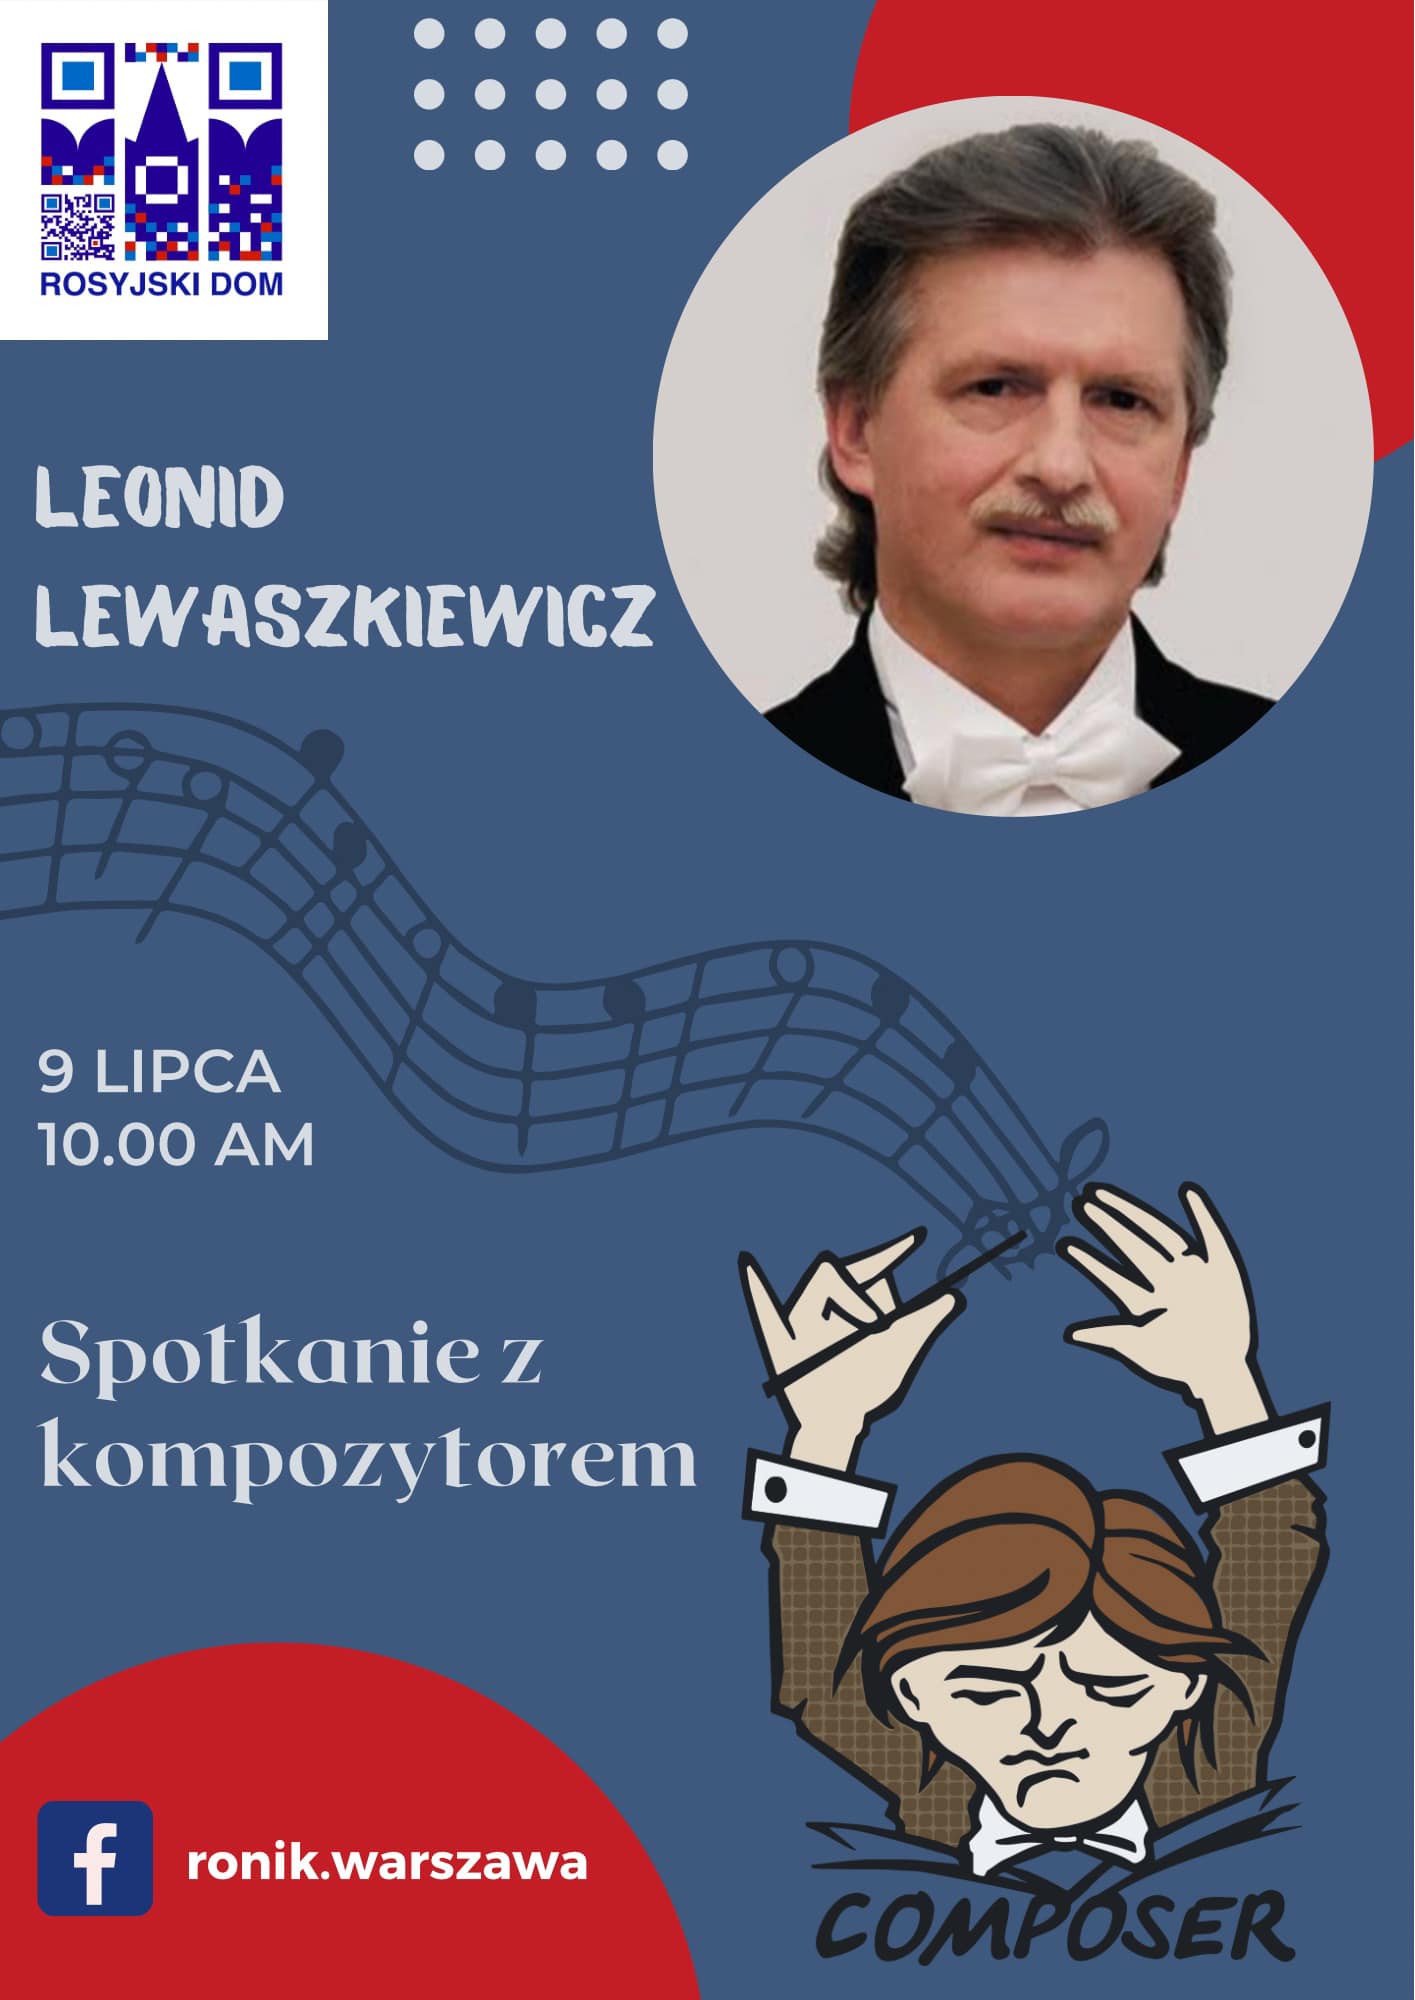 Spotkanie z kompozytorem Leonidem Lewaszkiewiczem